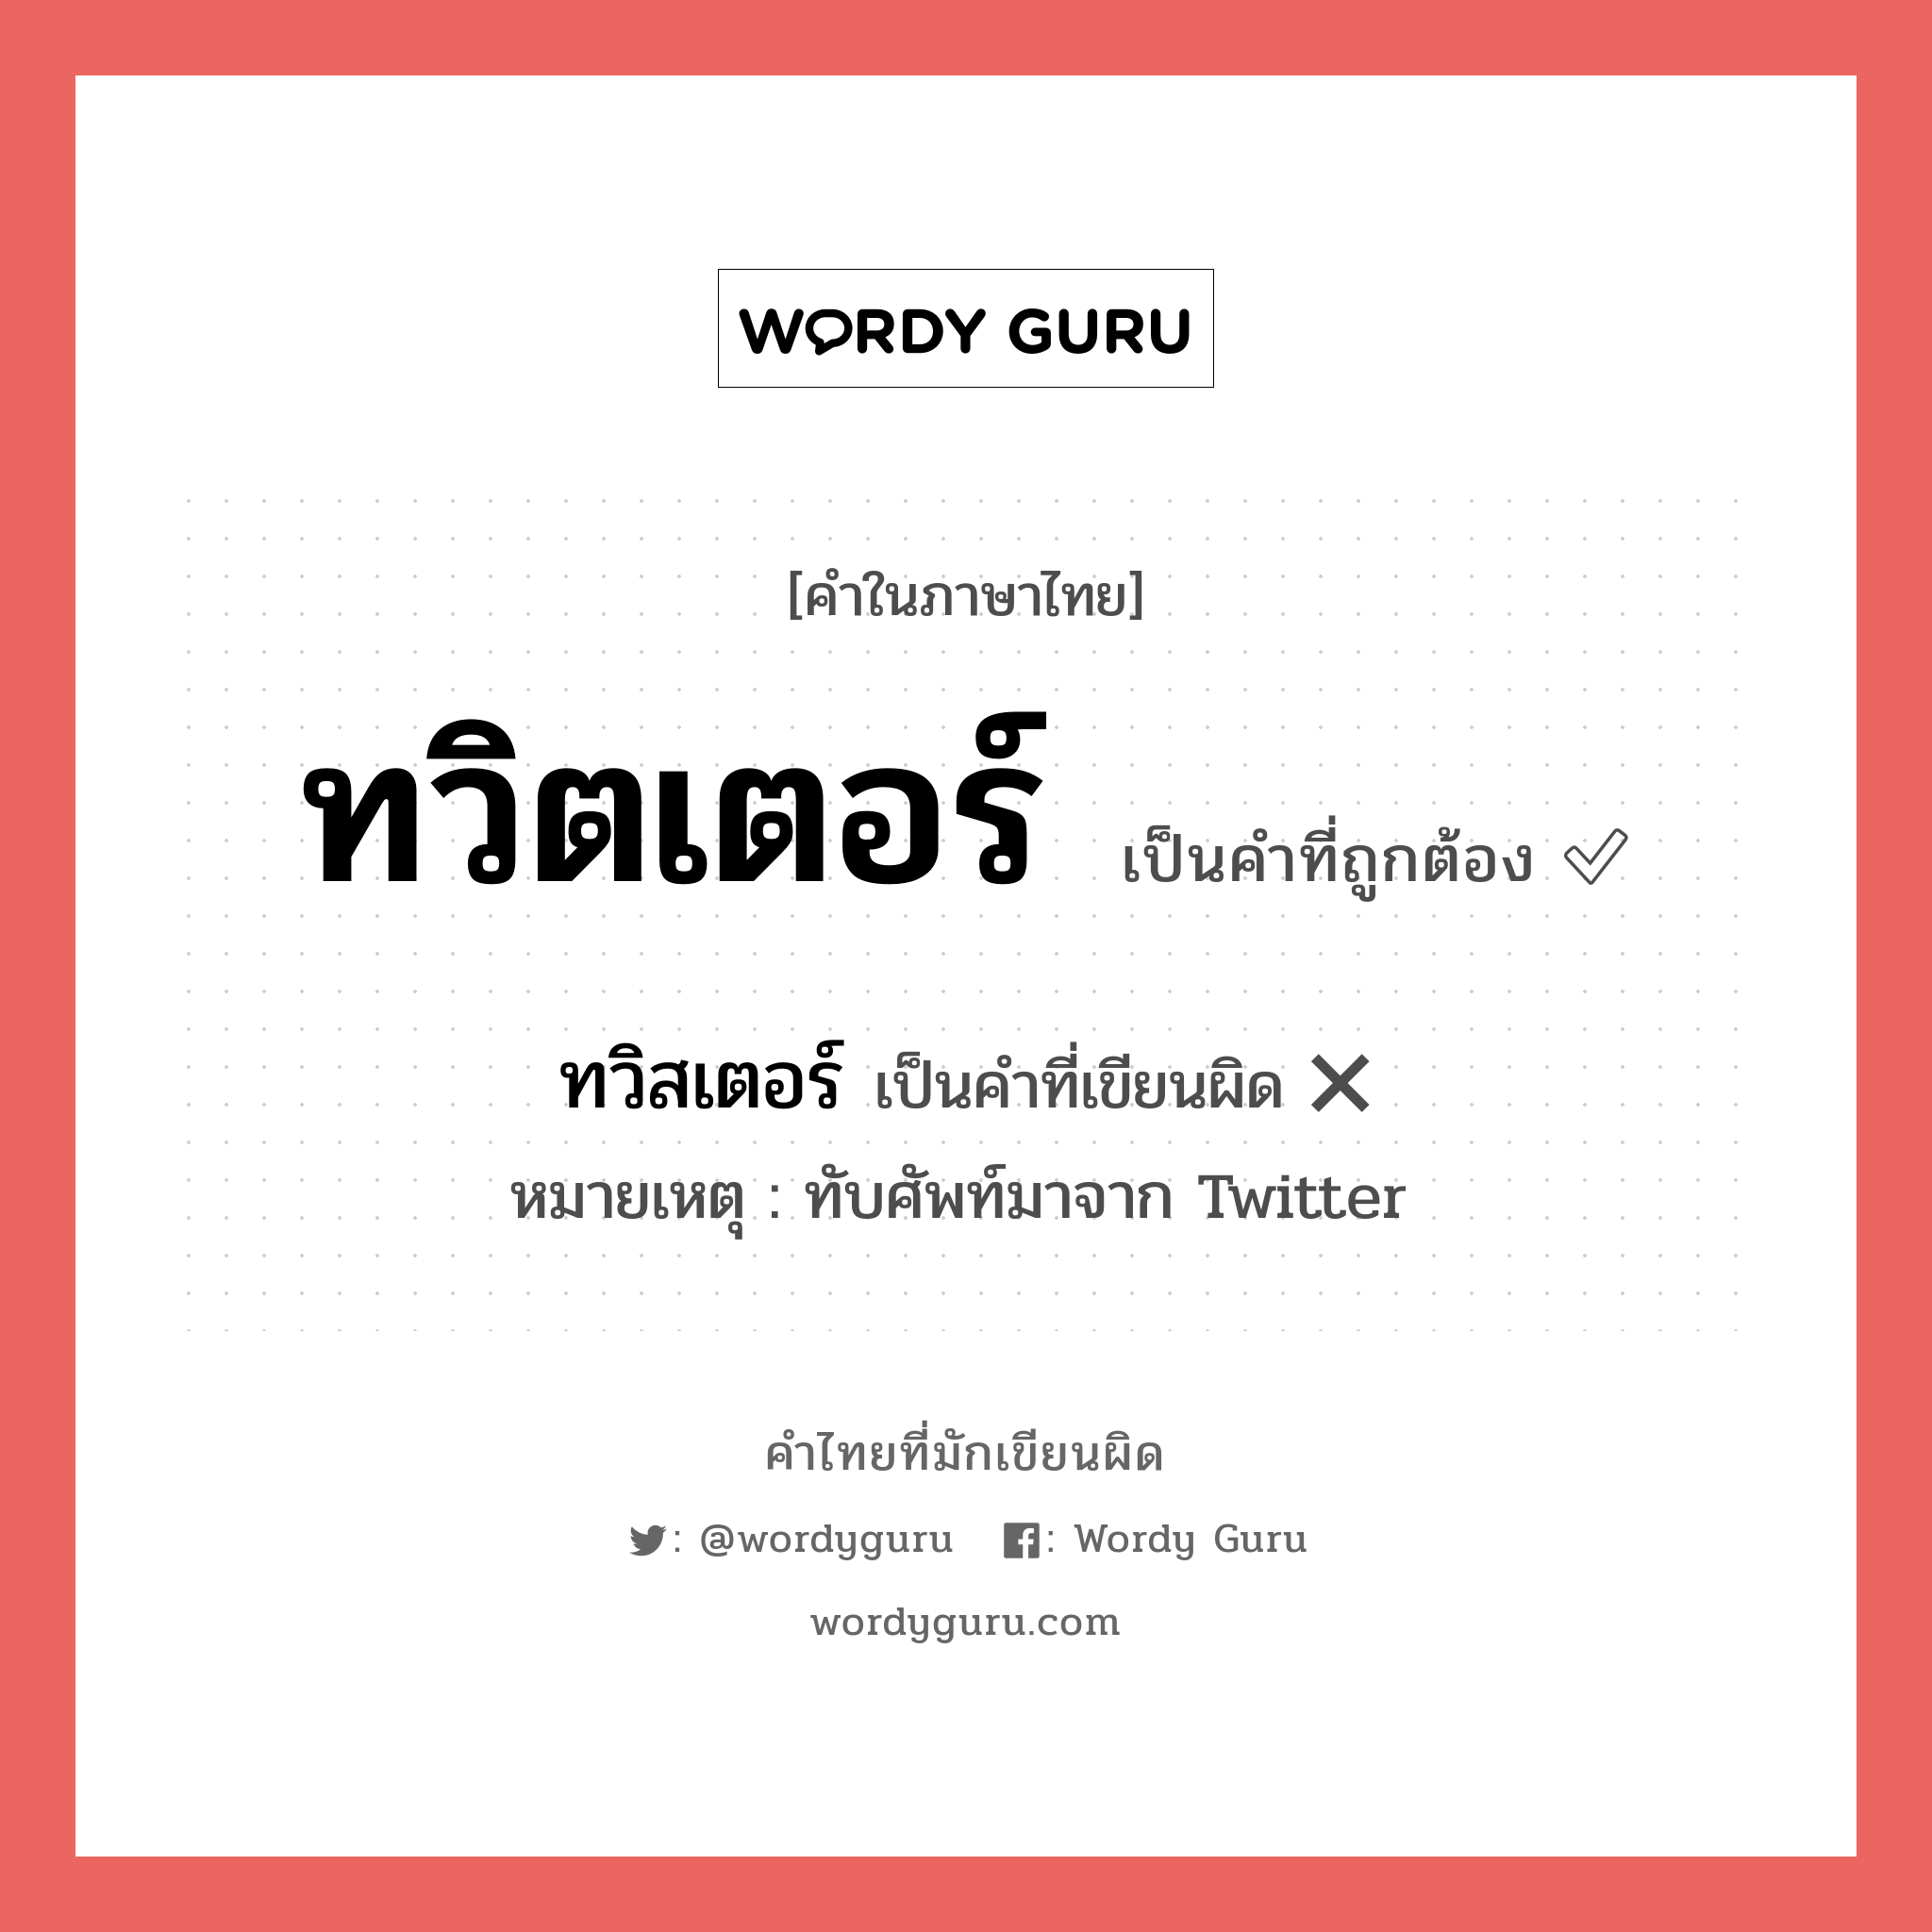 ทวิตเตอร์ หรือ ทวิสเตอร์ คำไหนเขียนถูก?, คำในภาษาไทยที่มักเขียนผิด ทวิตเตอร์ คำที่ผิด ❌ ทวิสเตอร์ หมายเหตุ ทับศัพท์มาจาก Twitter